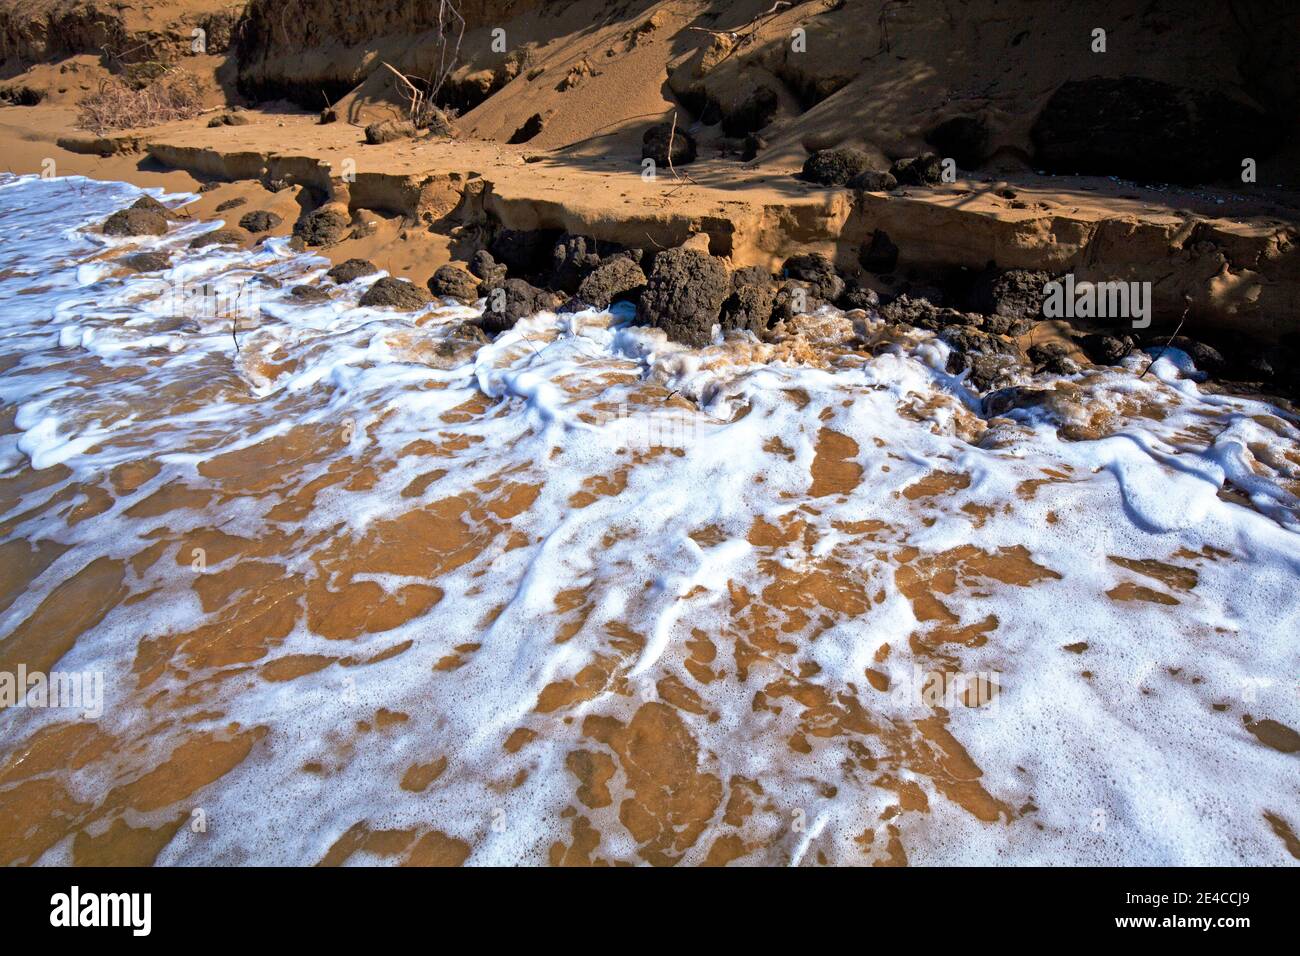 Dopo la tempesta mediterranea (Medicane) nel settembre 2020, grandi tratti di spiaggia sono caduti vittime del mare, Elis, Peloponneso, Grecia Foto Stock